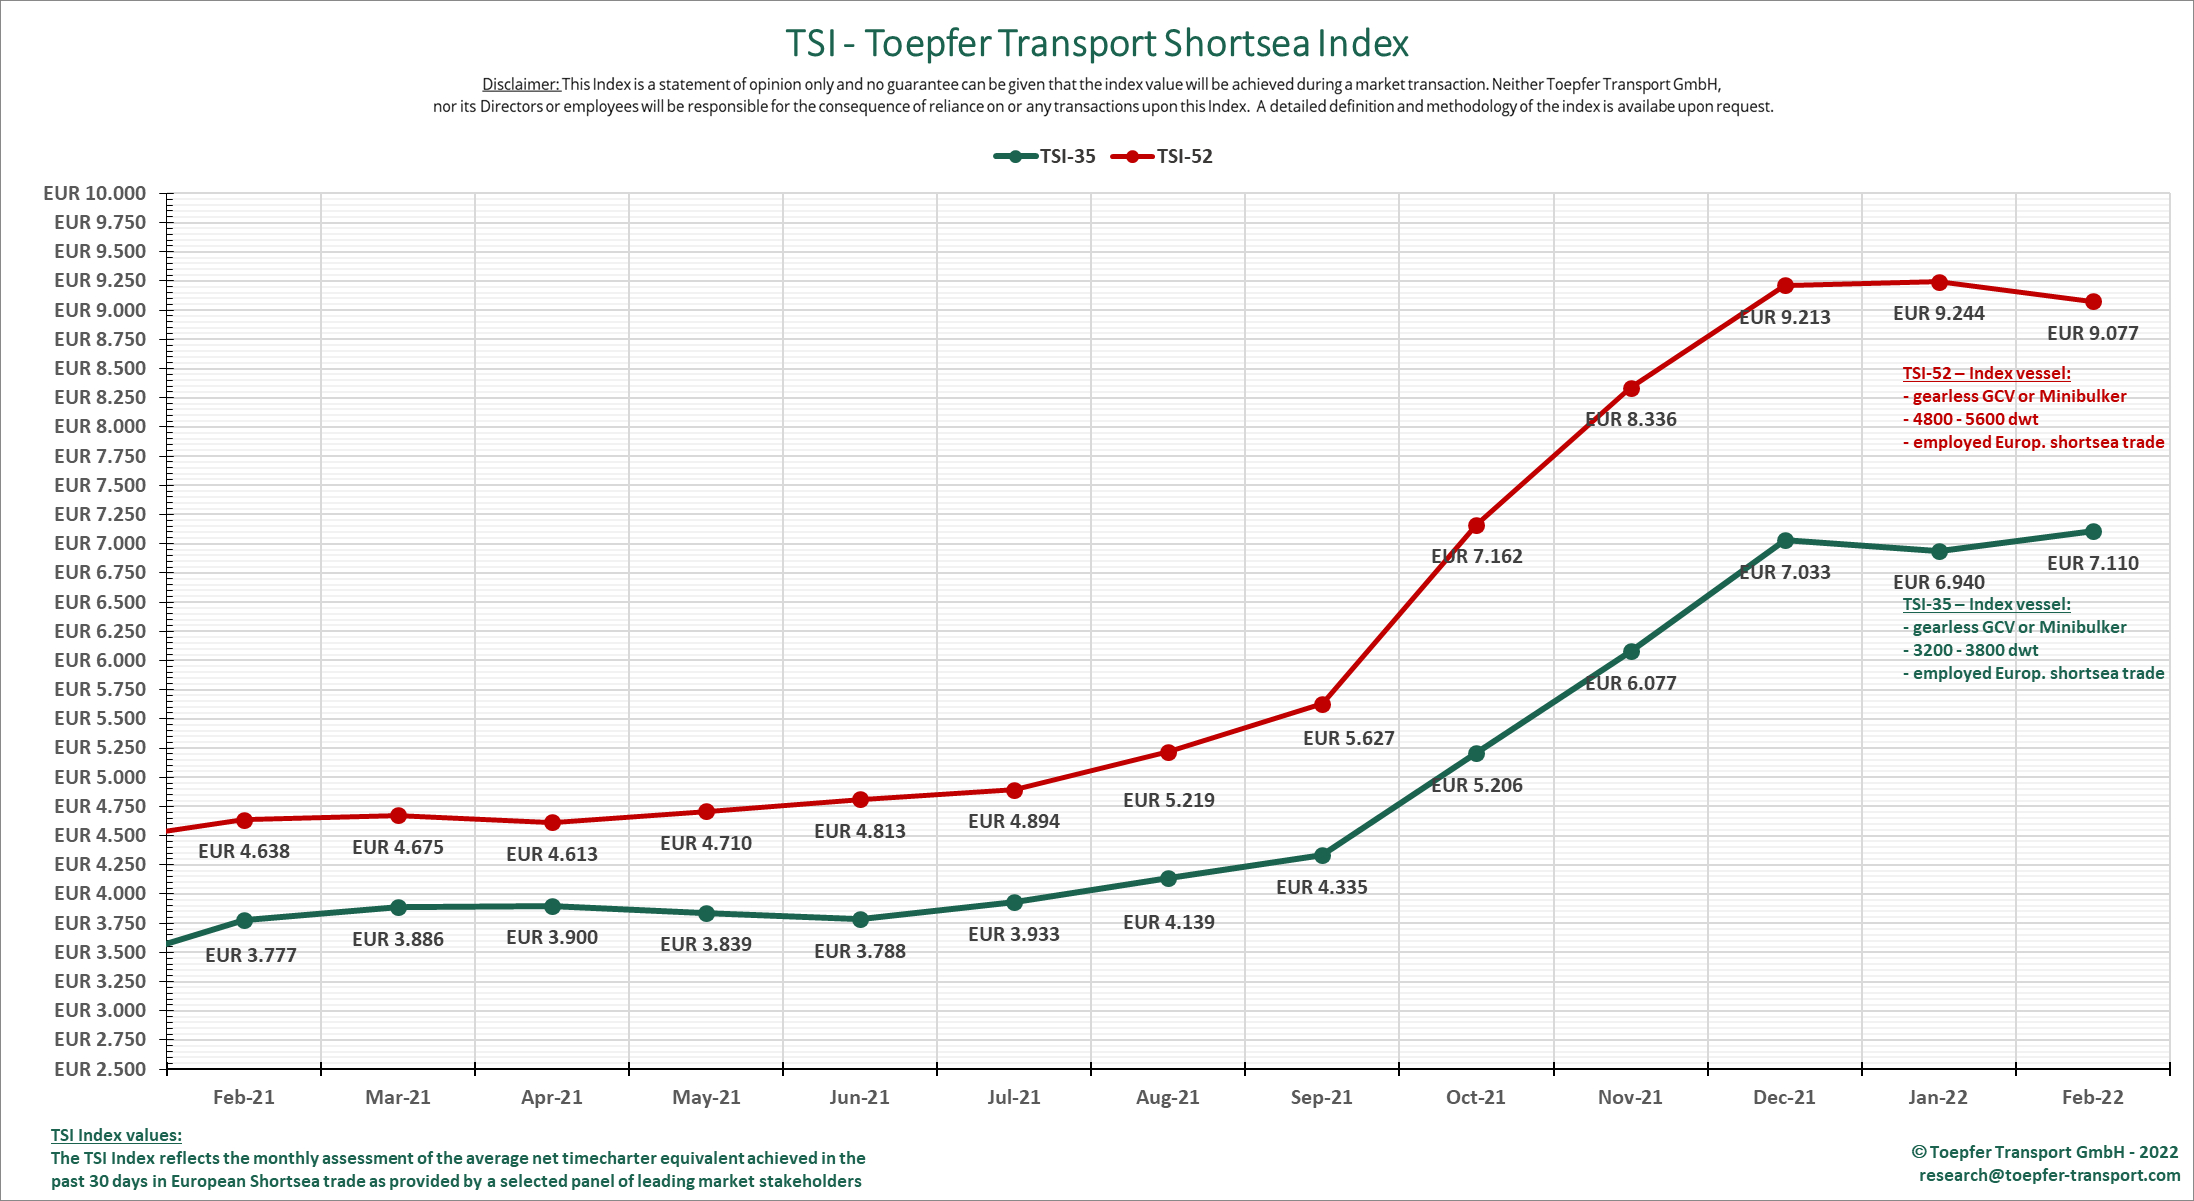 Toepfer Transport: European shortsea market direction still uncertain